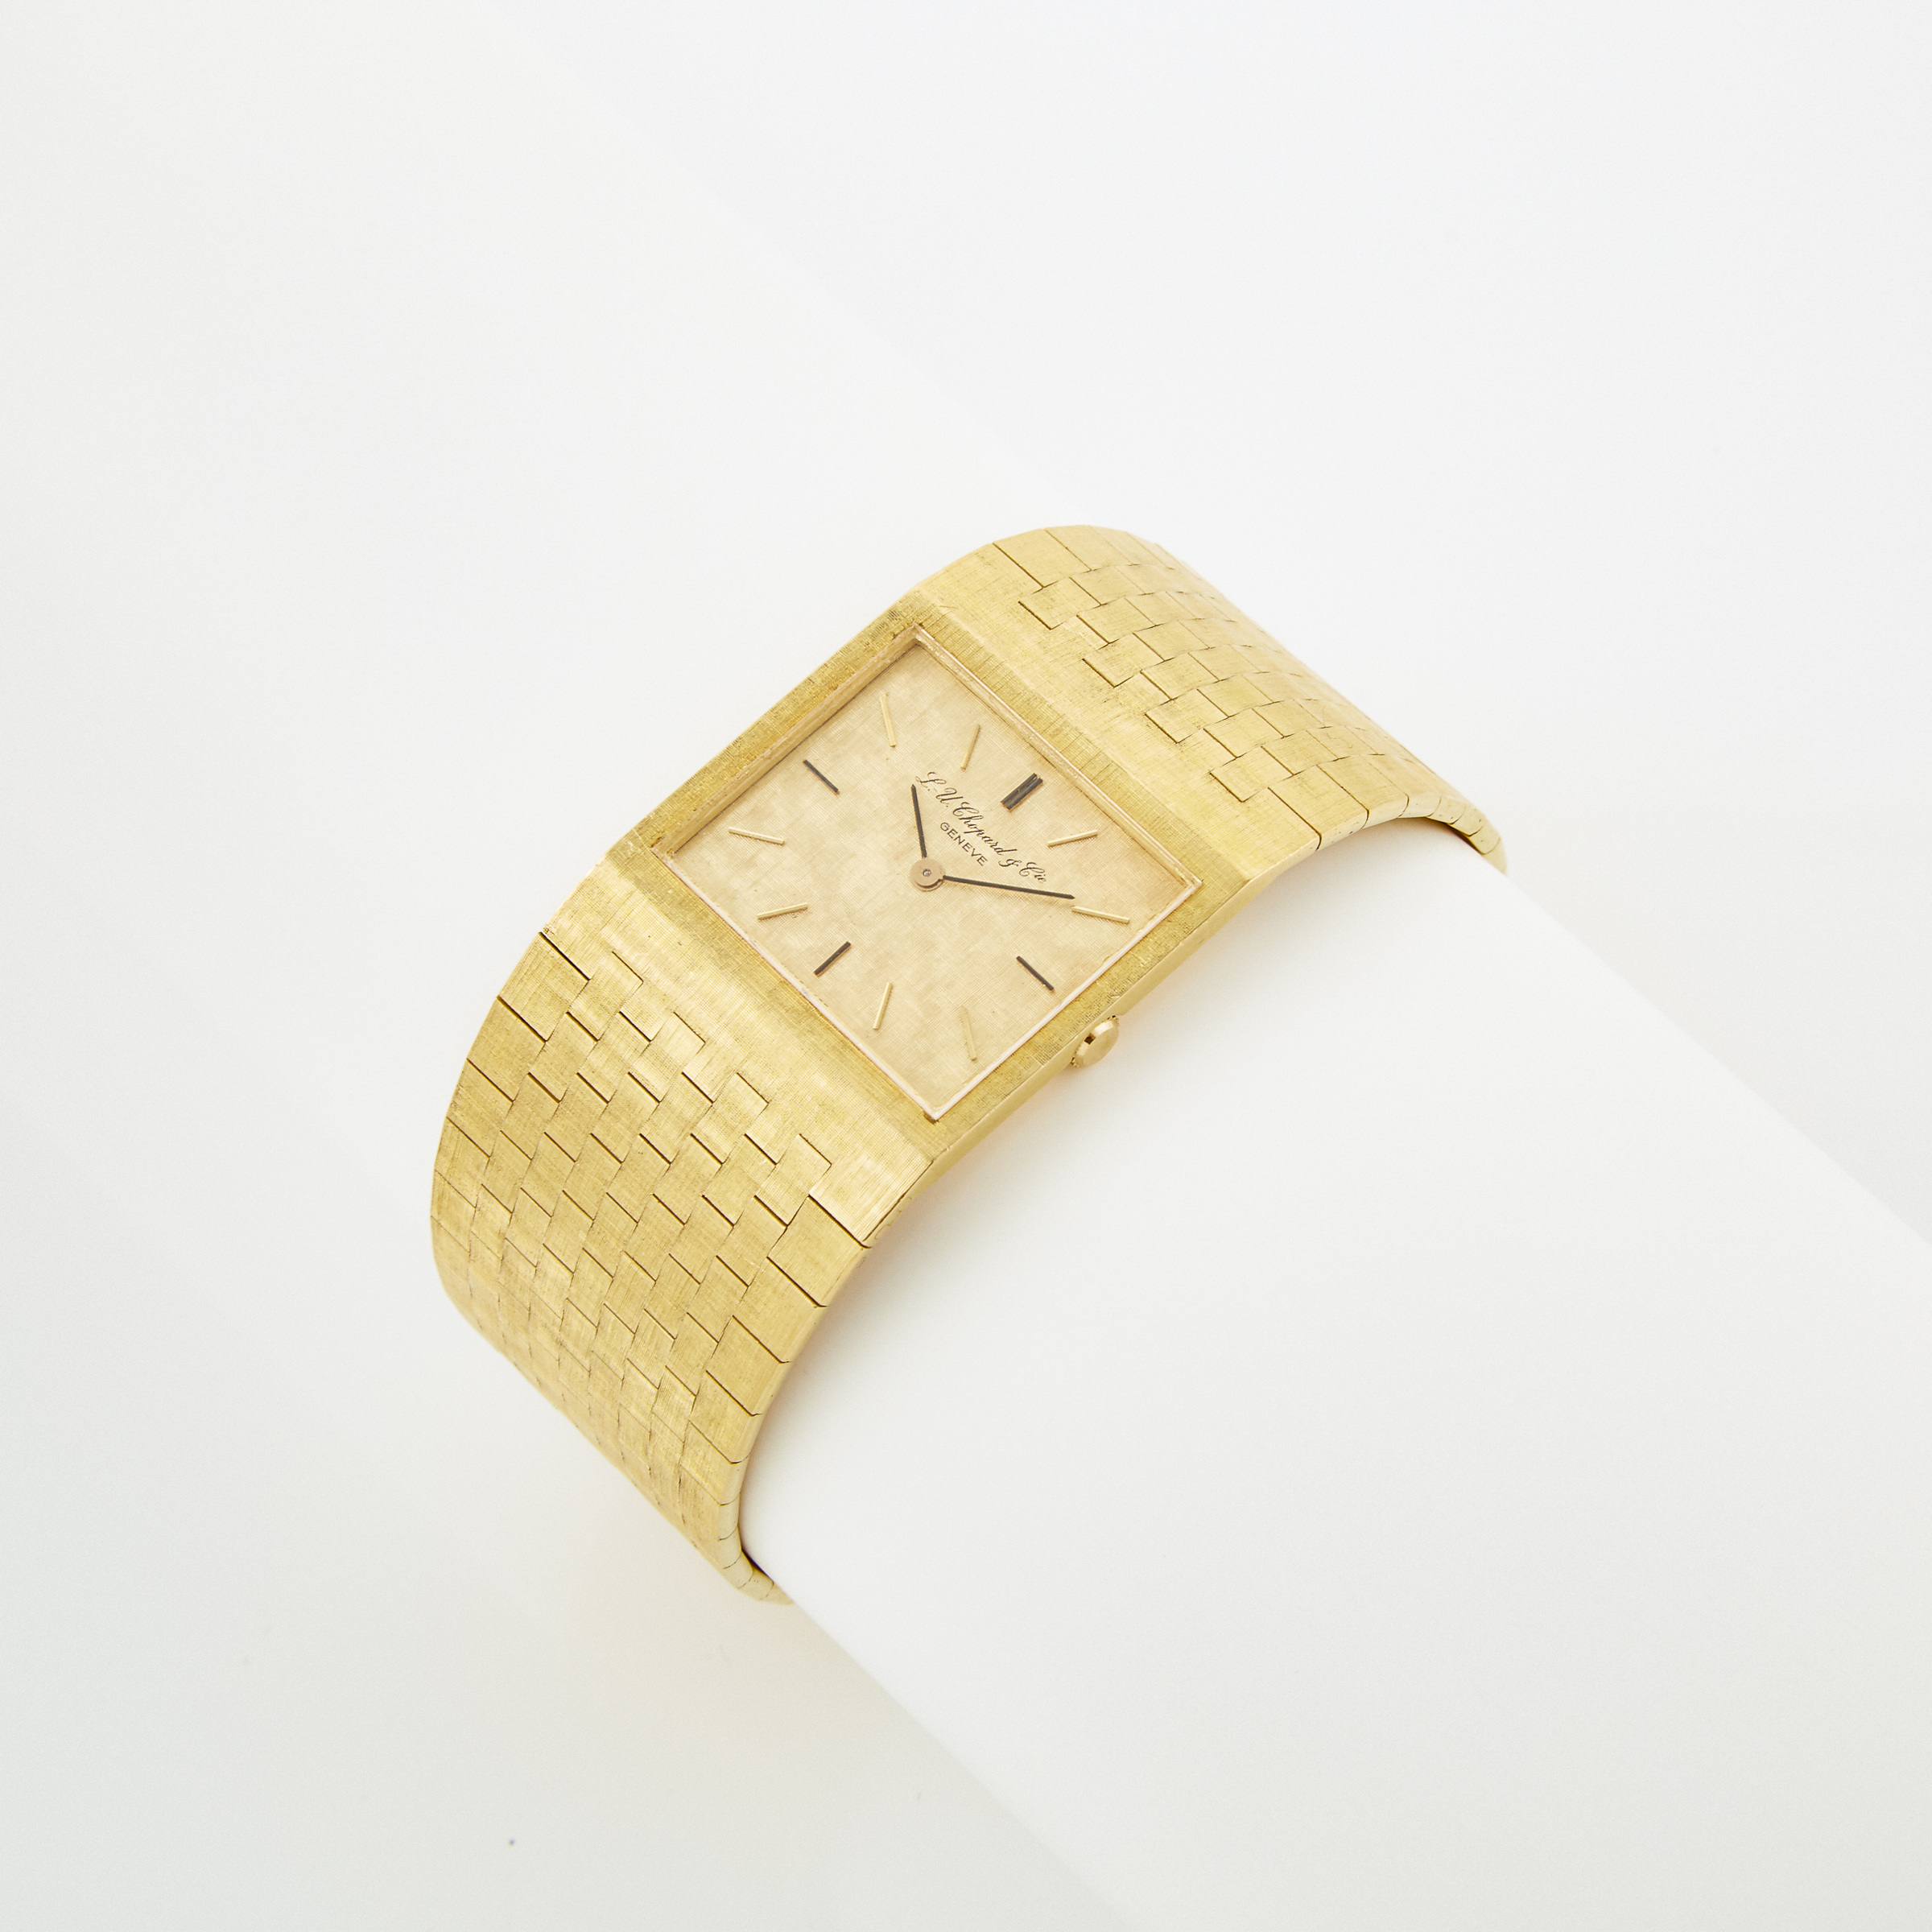 L.U. Chopard & Co. Wristwatch